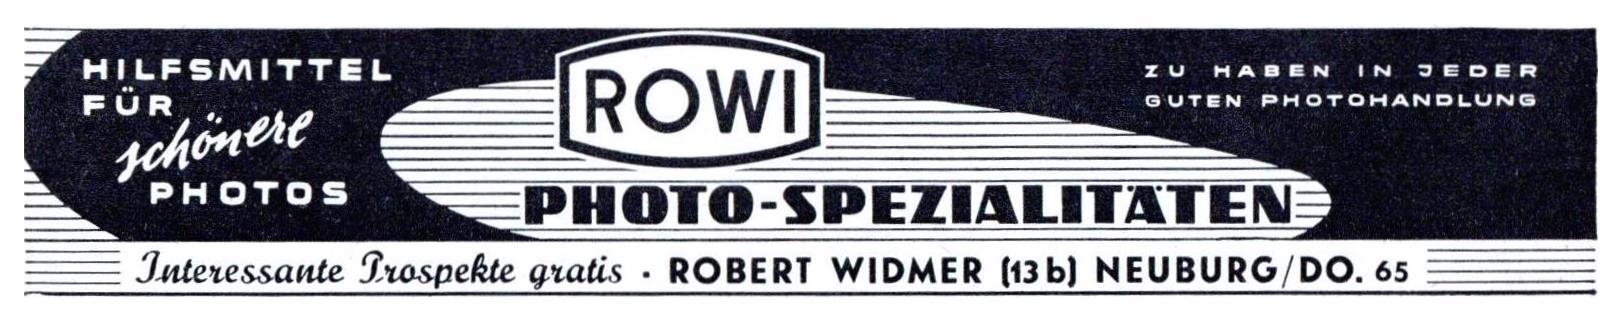 Rowi 1959 1.jpg